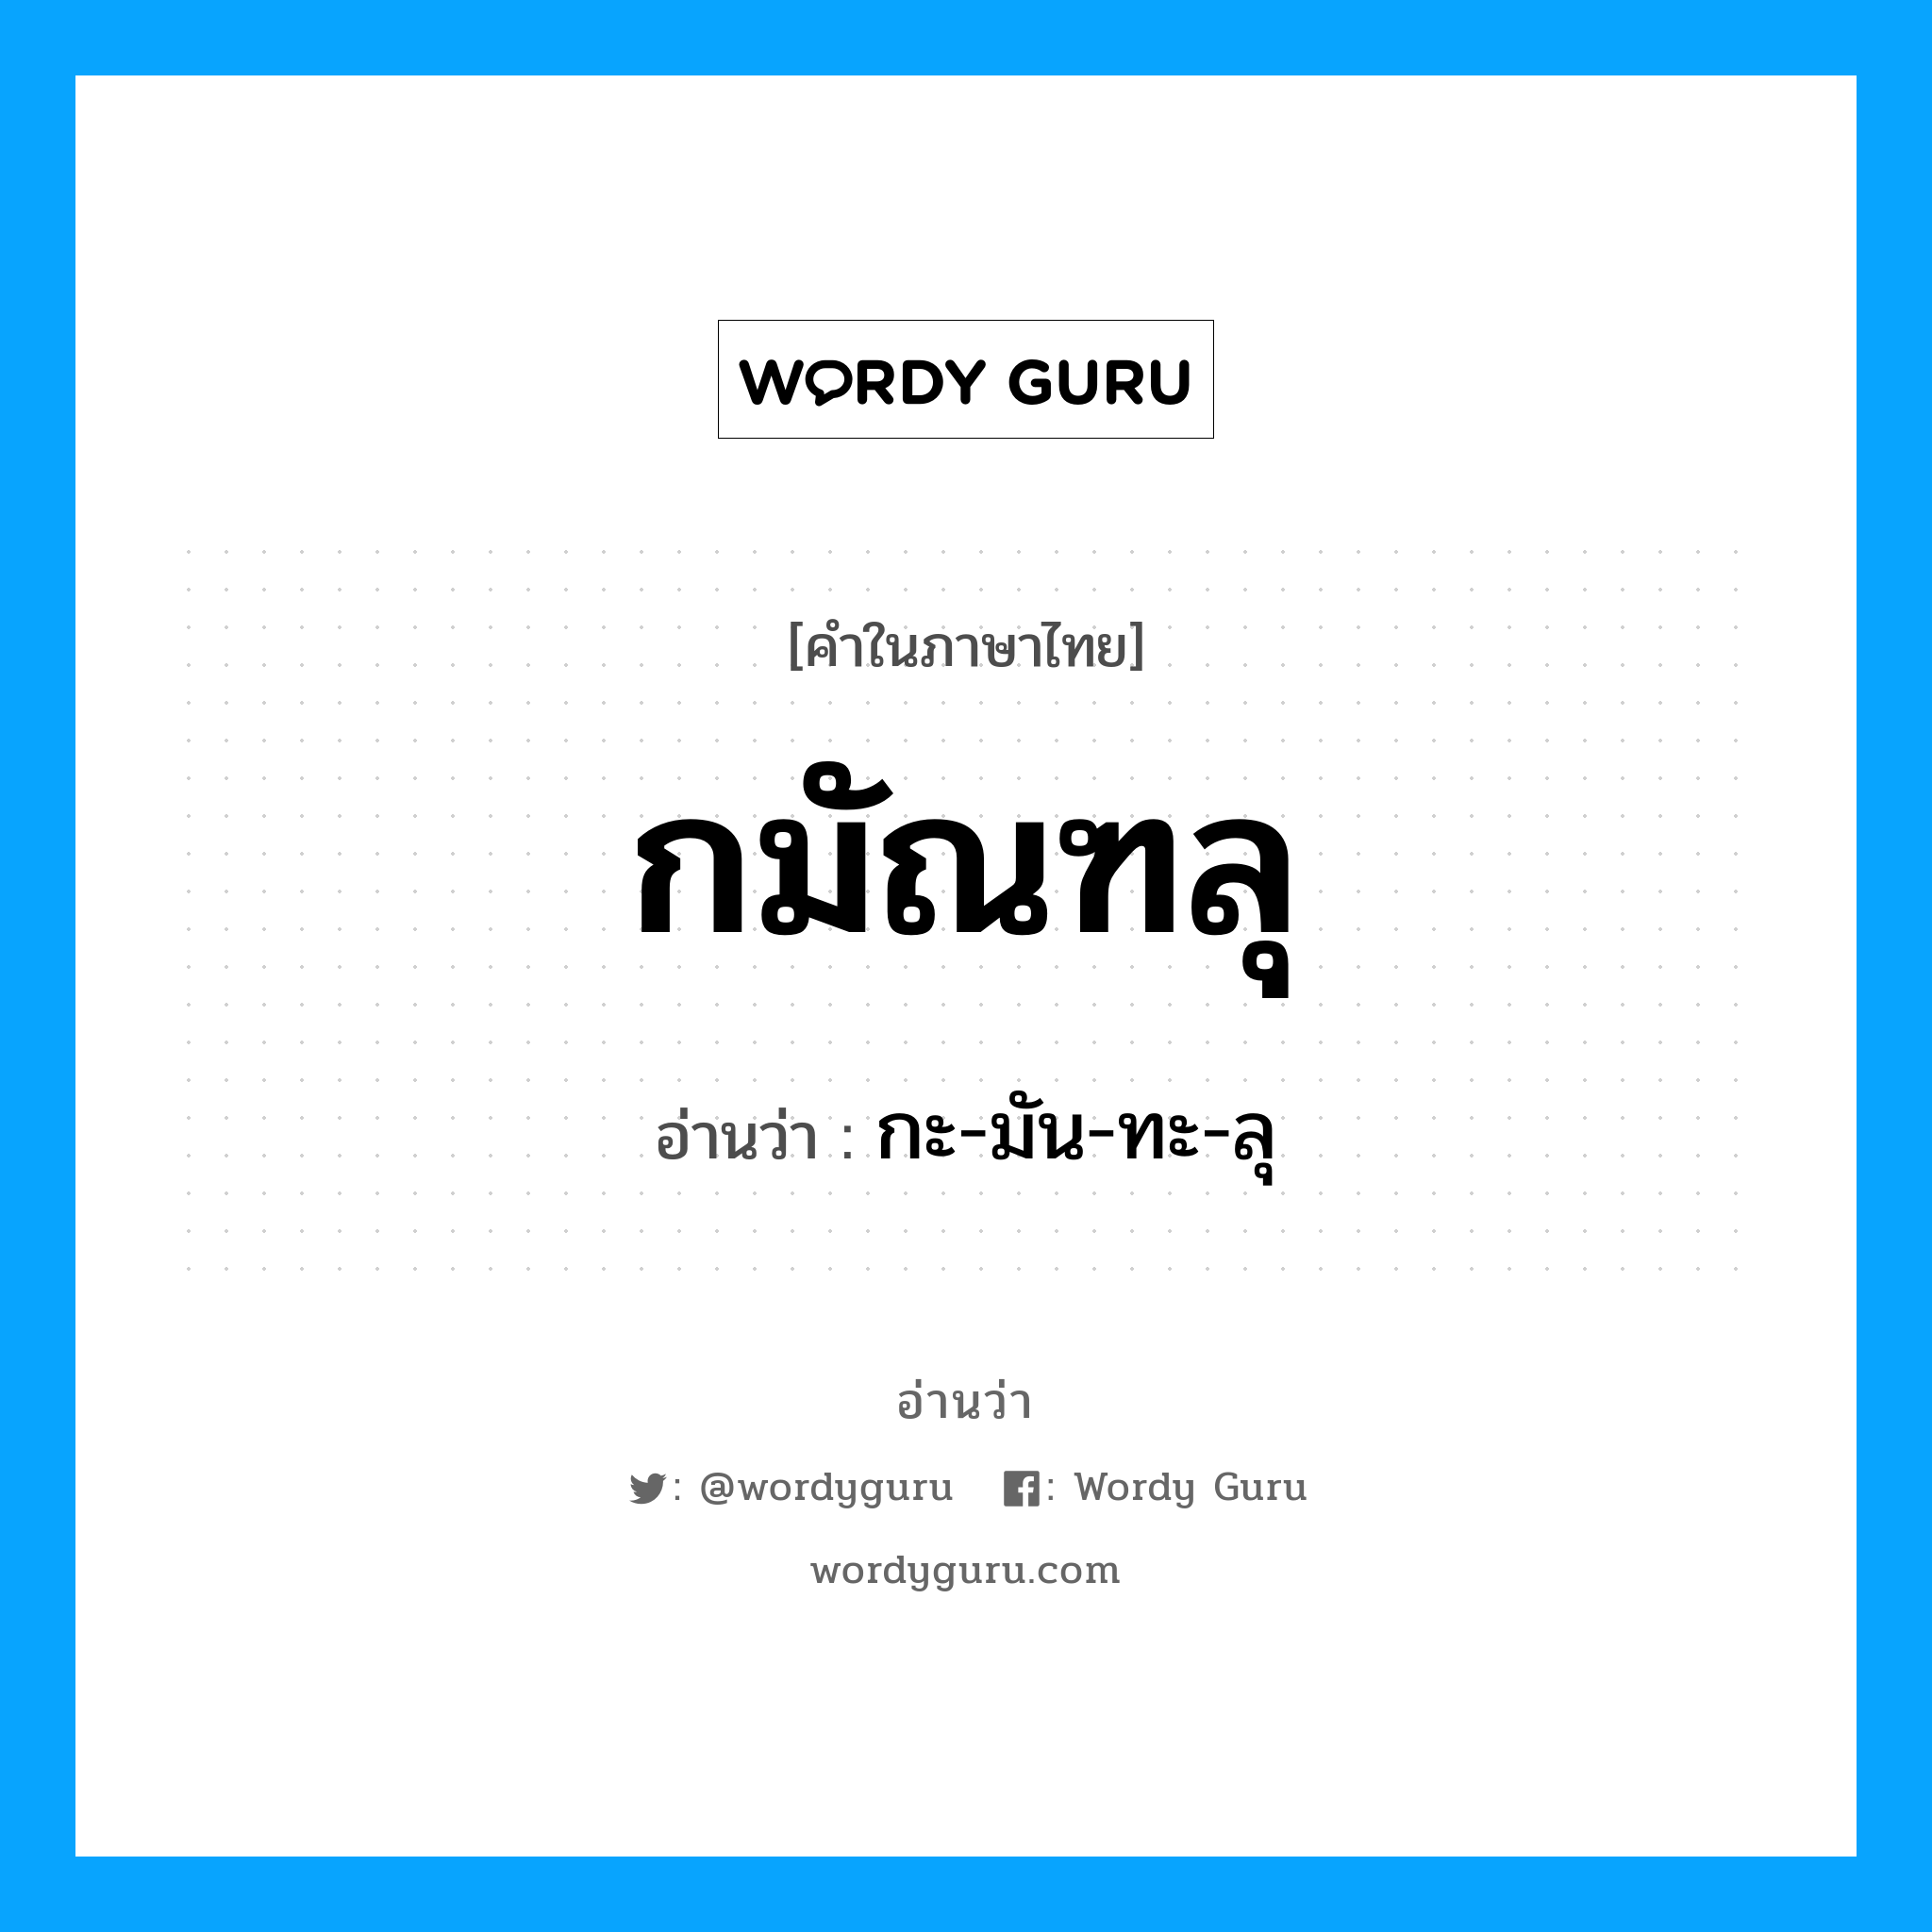 กะ-มัน-ทะ-ลุ เป็นคำอ่านของคำไหน?, คำในภาษาไทย กะ-มัน-ทะ-ลุ อ่านว่า กมัณฑลุ